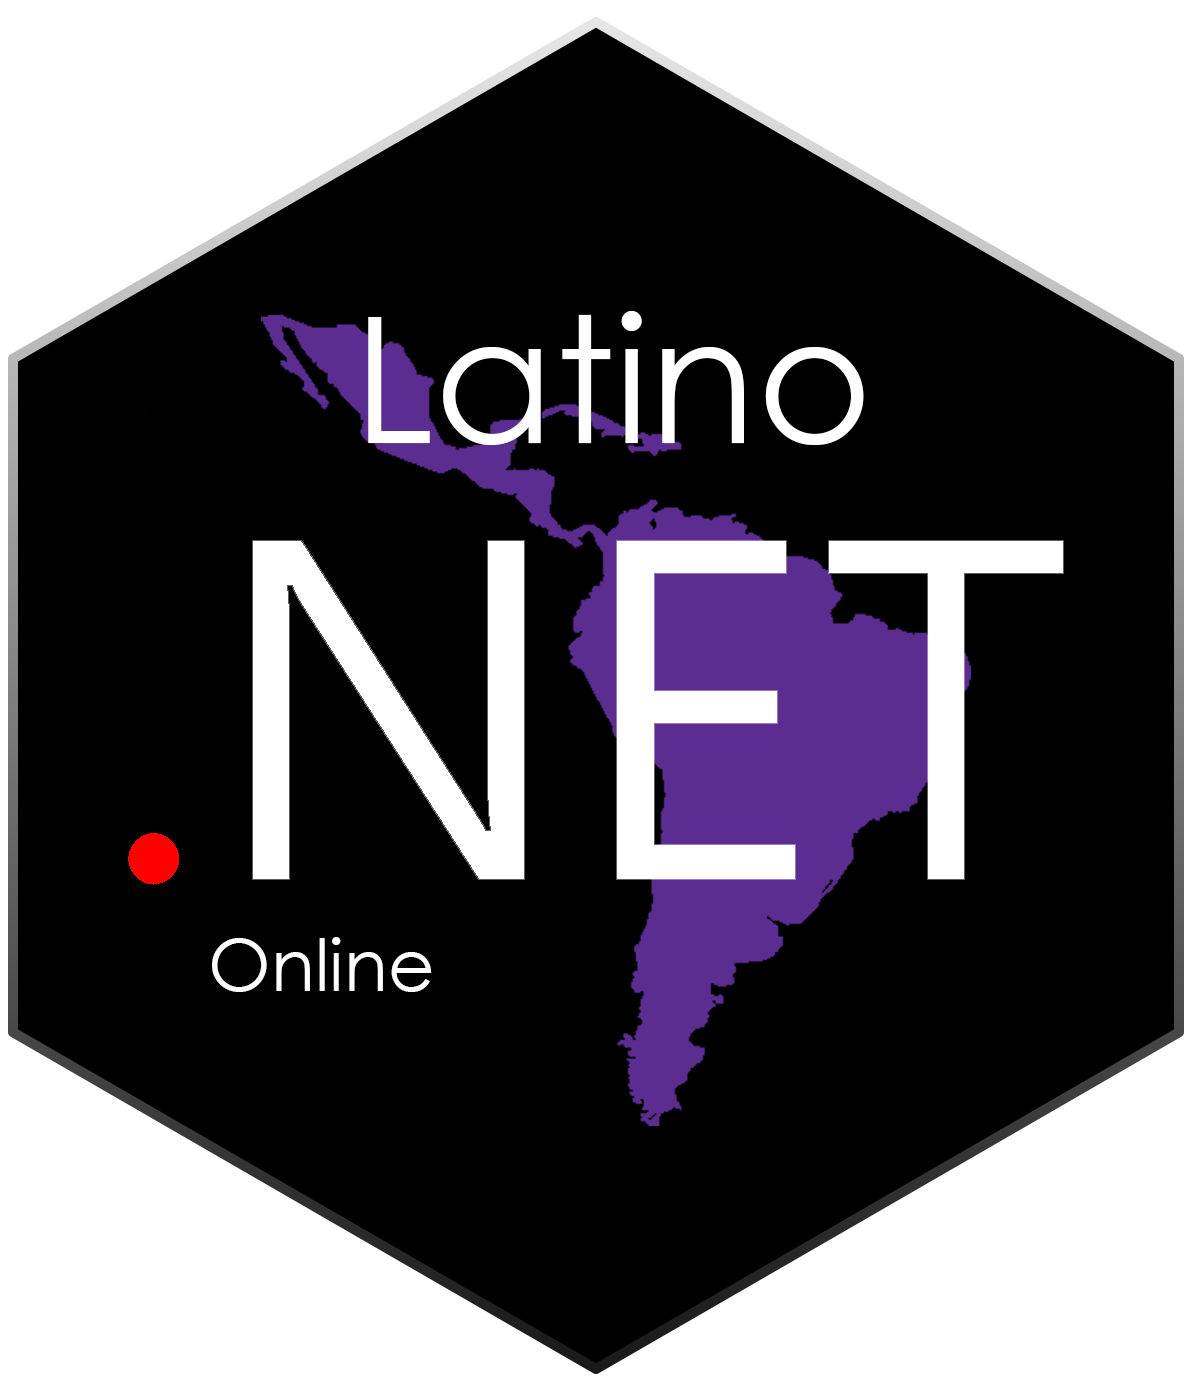 Latino net